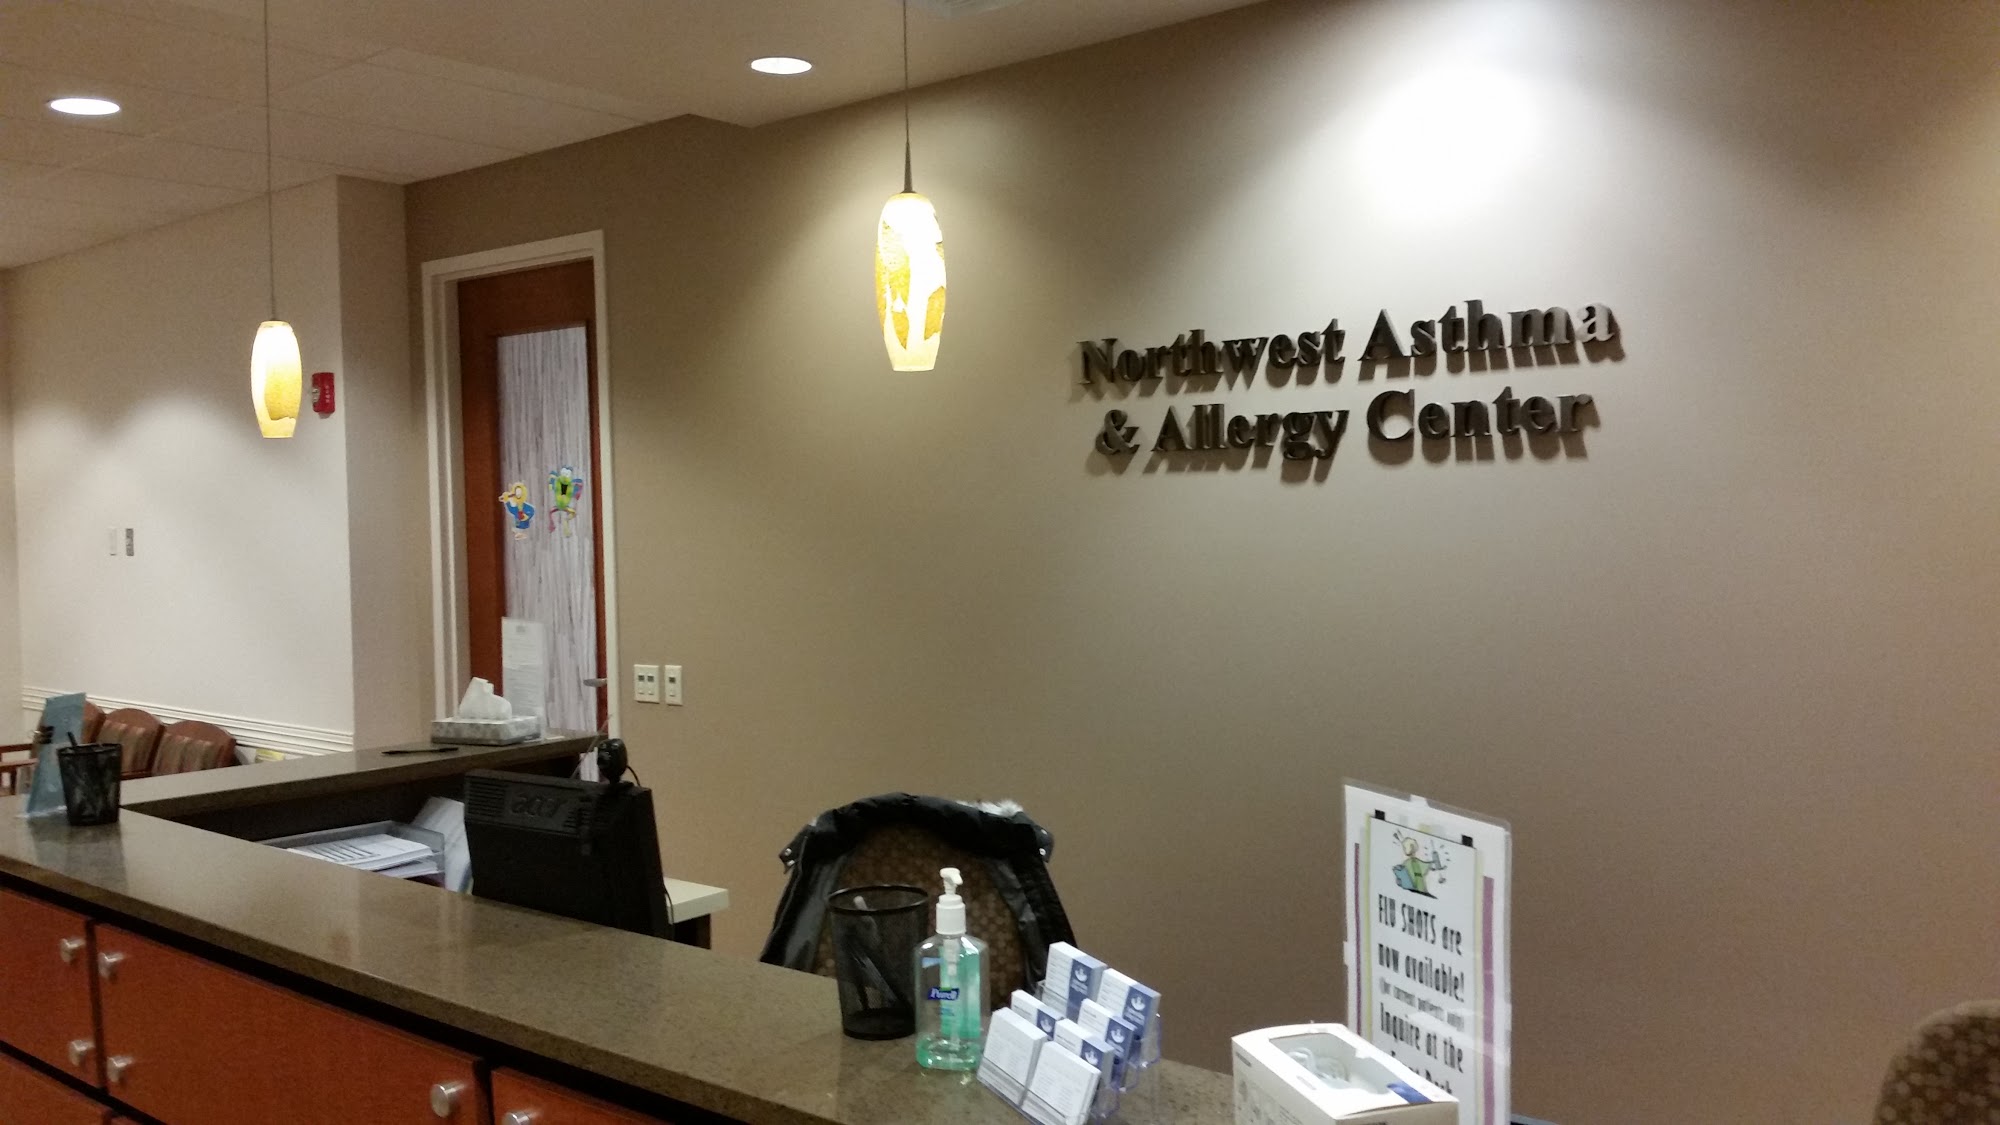 Northwest Asthma & Allergy Center